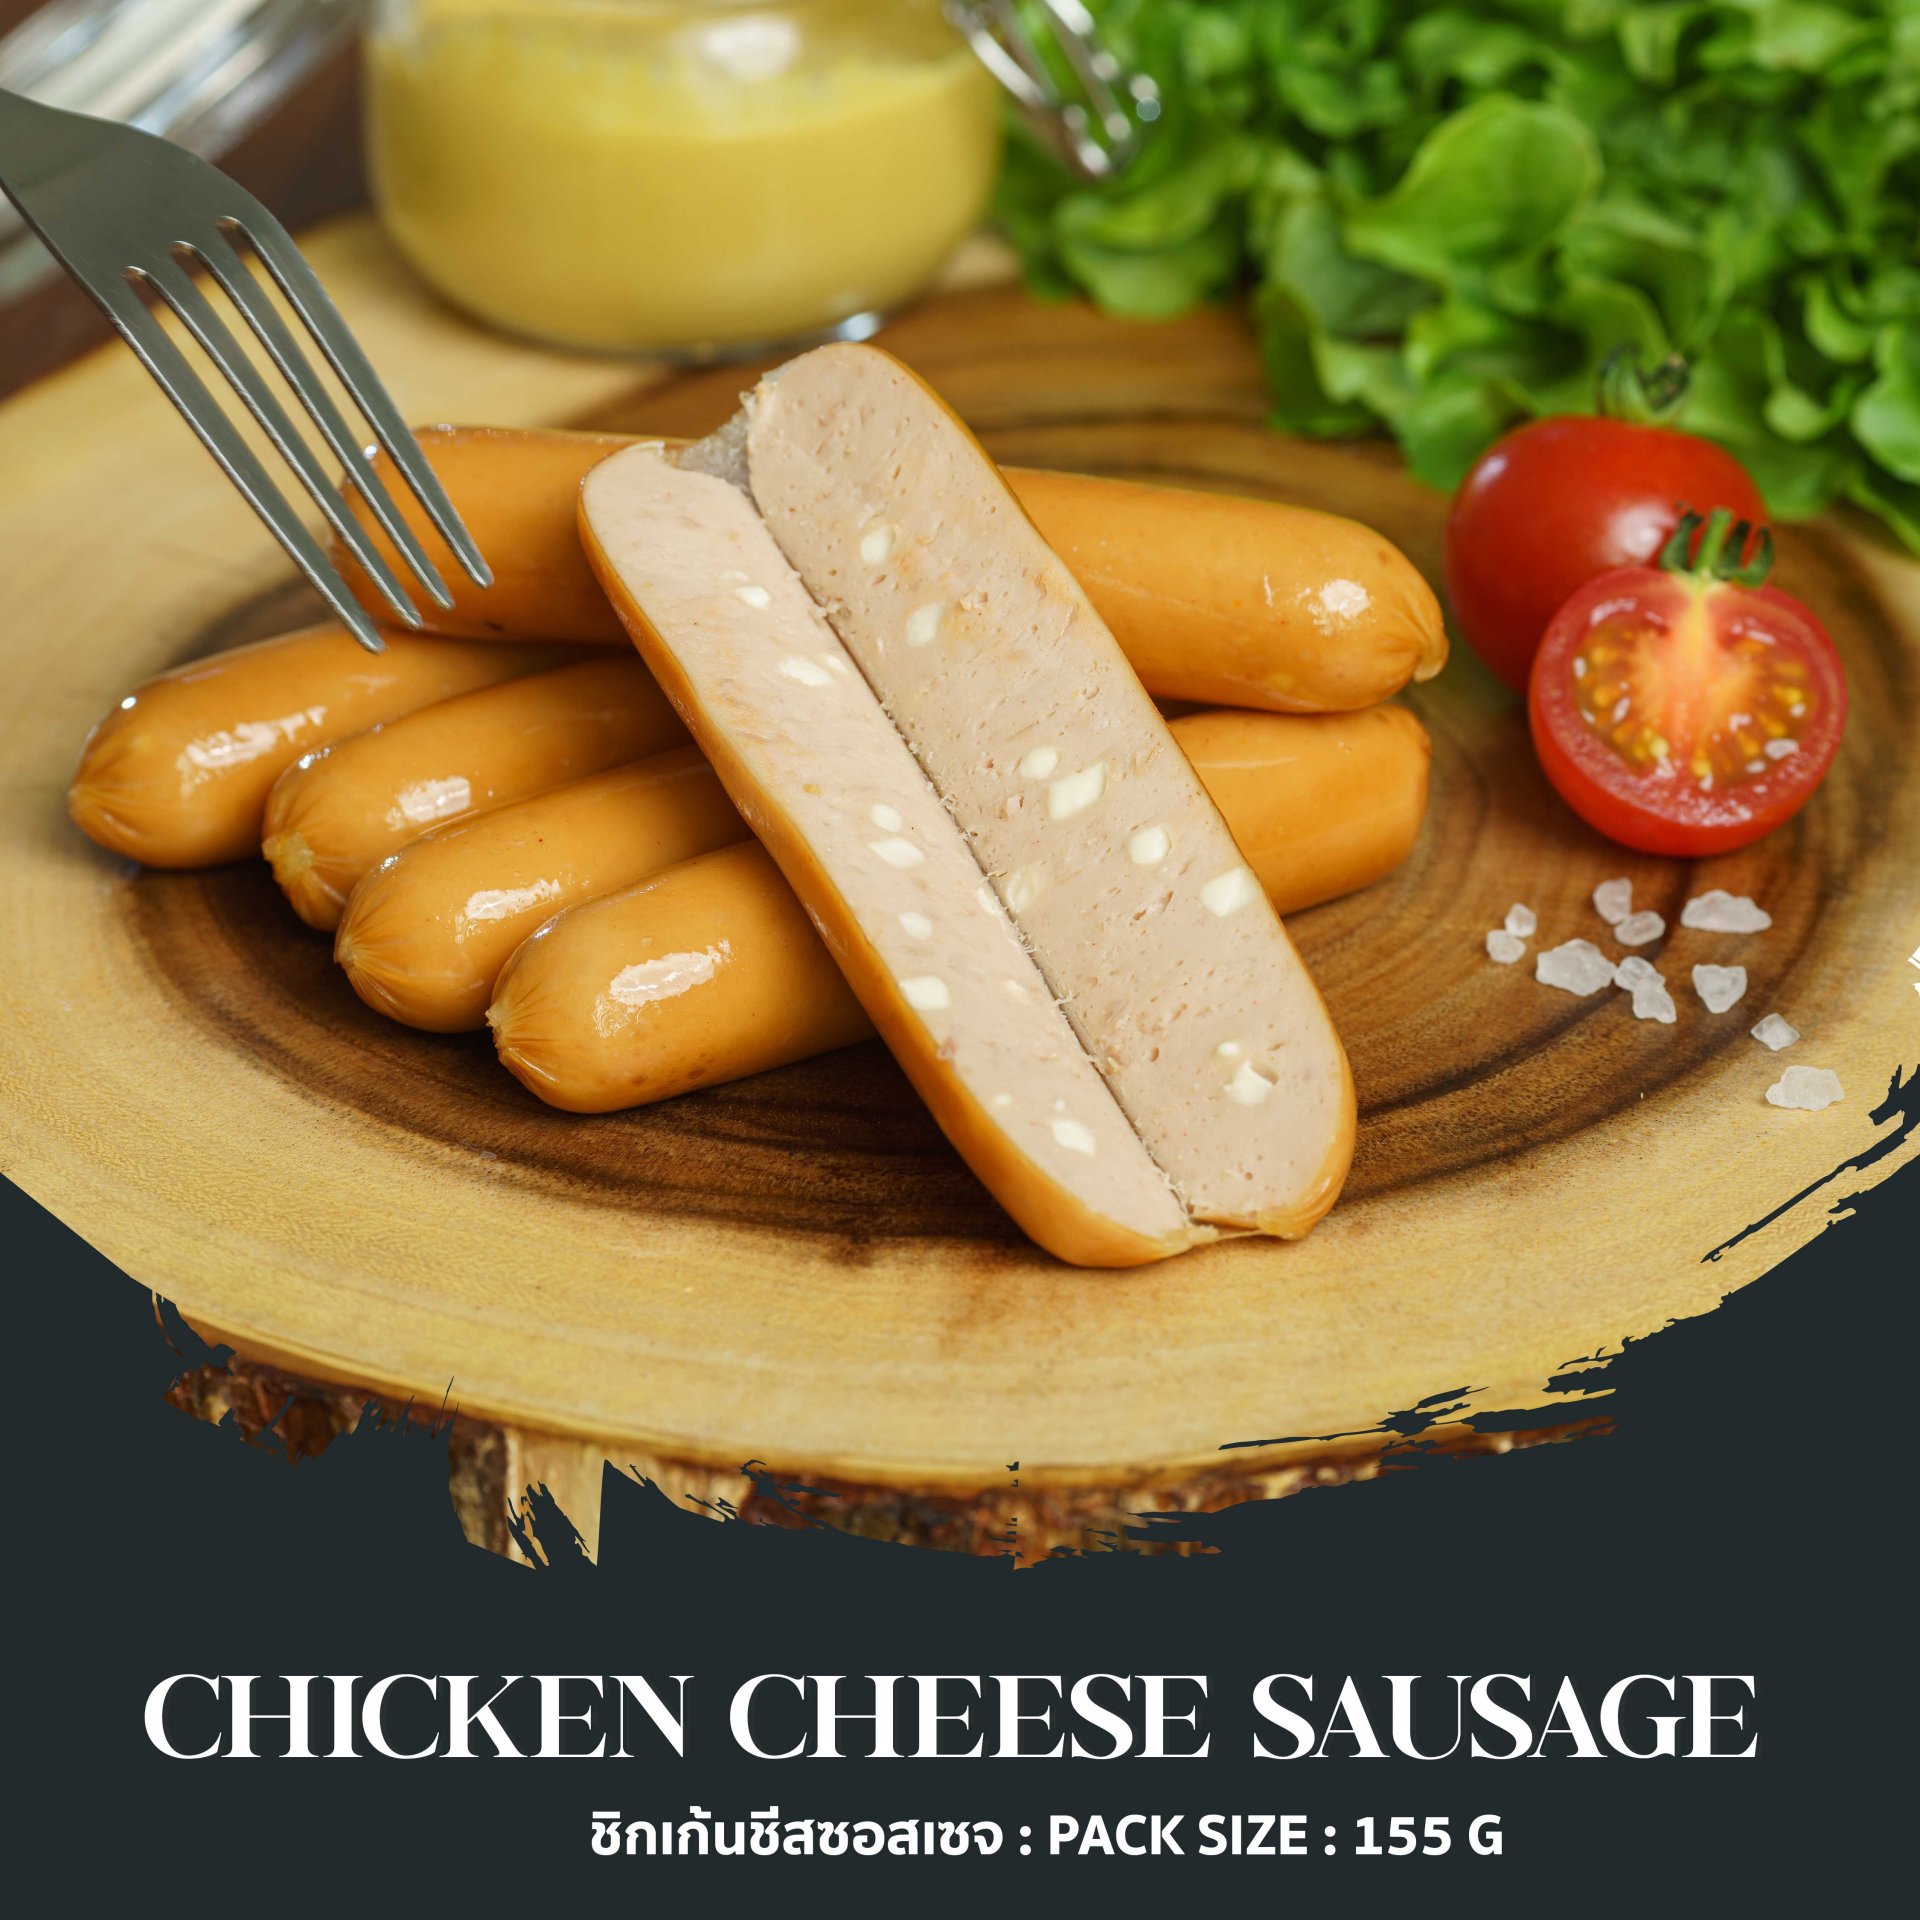 Chicken Cheese Sausage